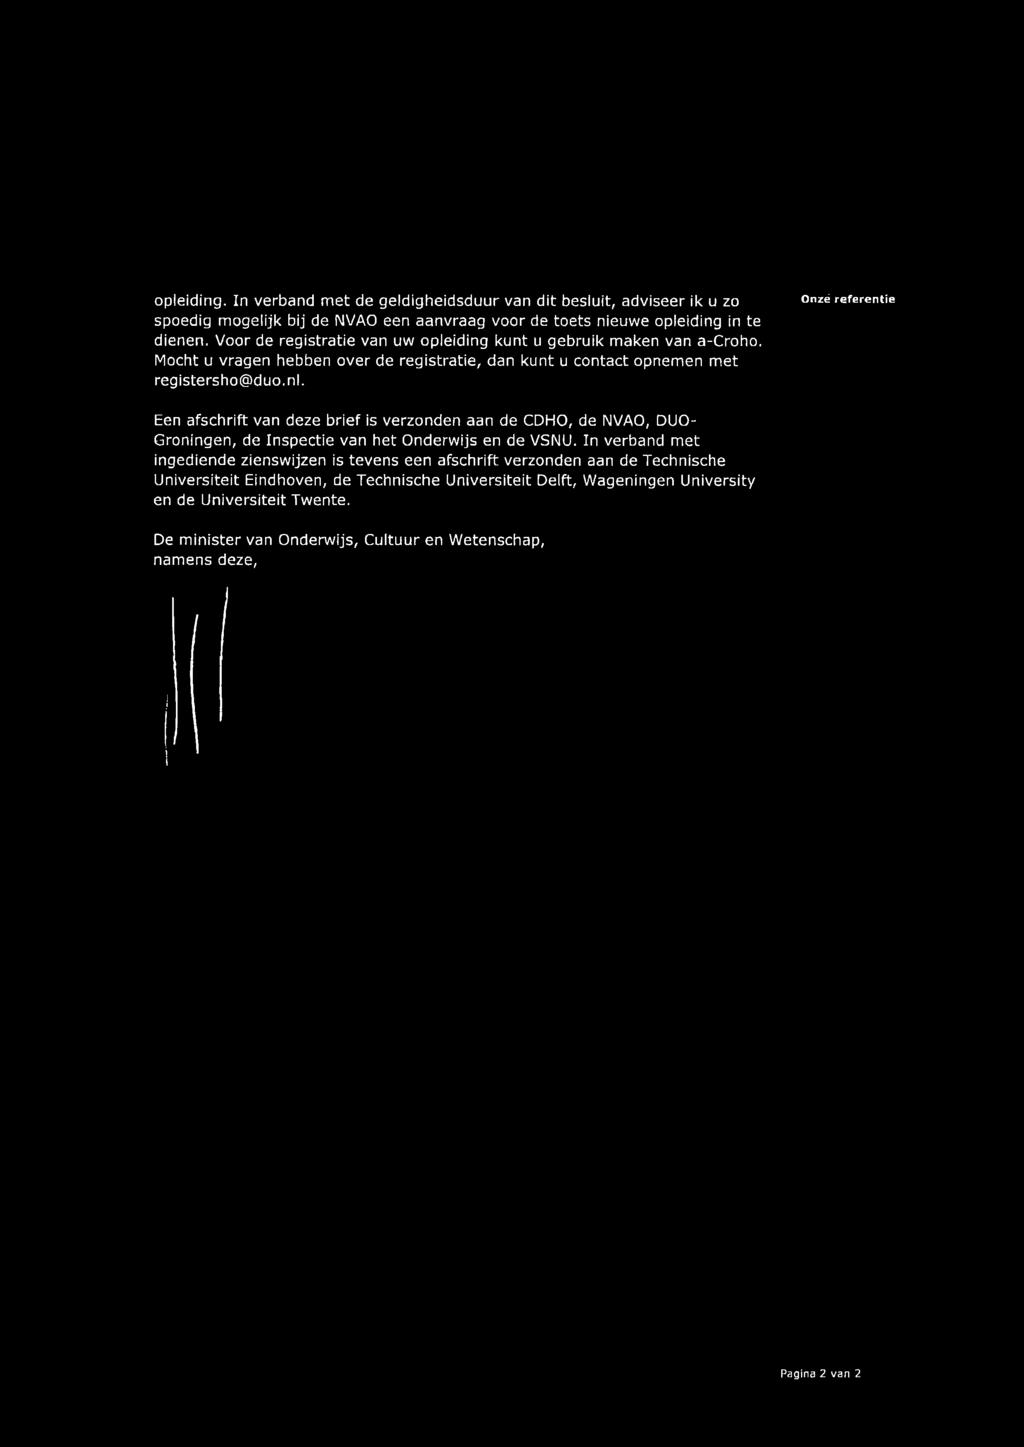 Onzé referentie Een afschrift van deze brief is verzonden aan de CDHO, de NVAO, DUO- Groningen, de Inspectie van het Onderwijs en de VSNU.